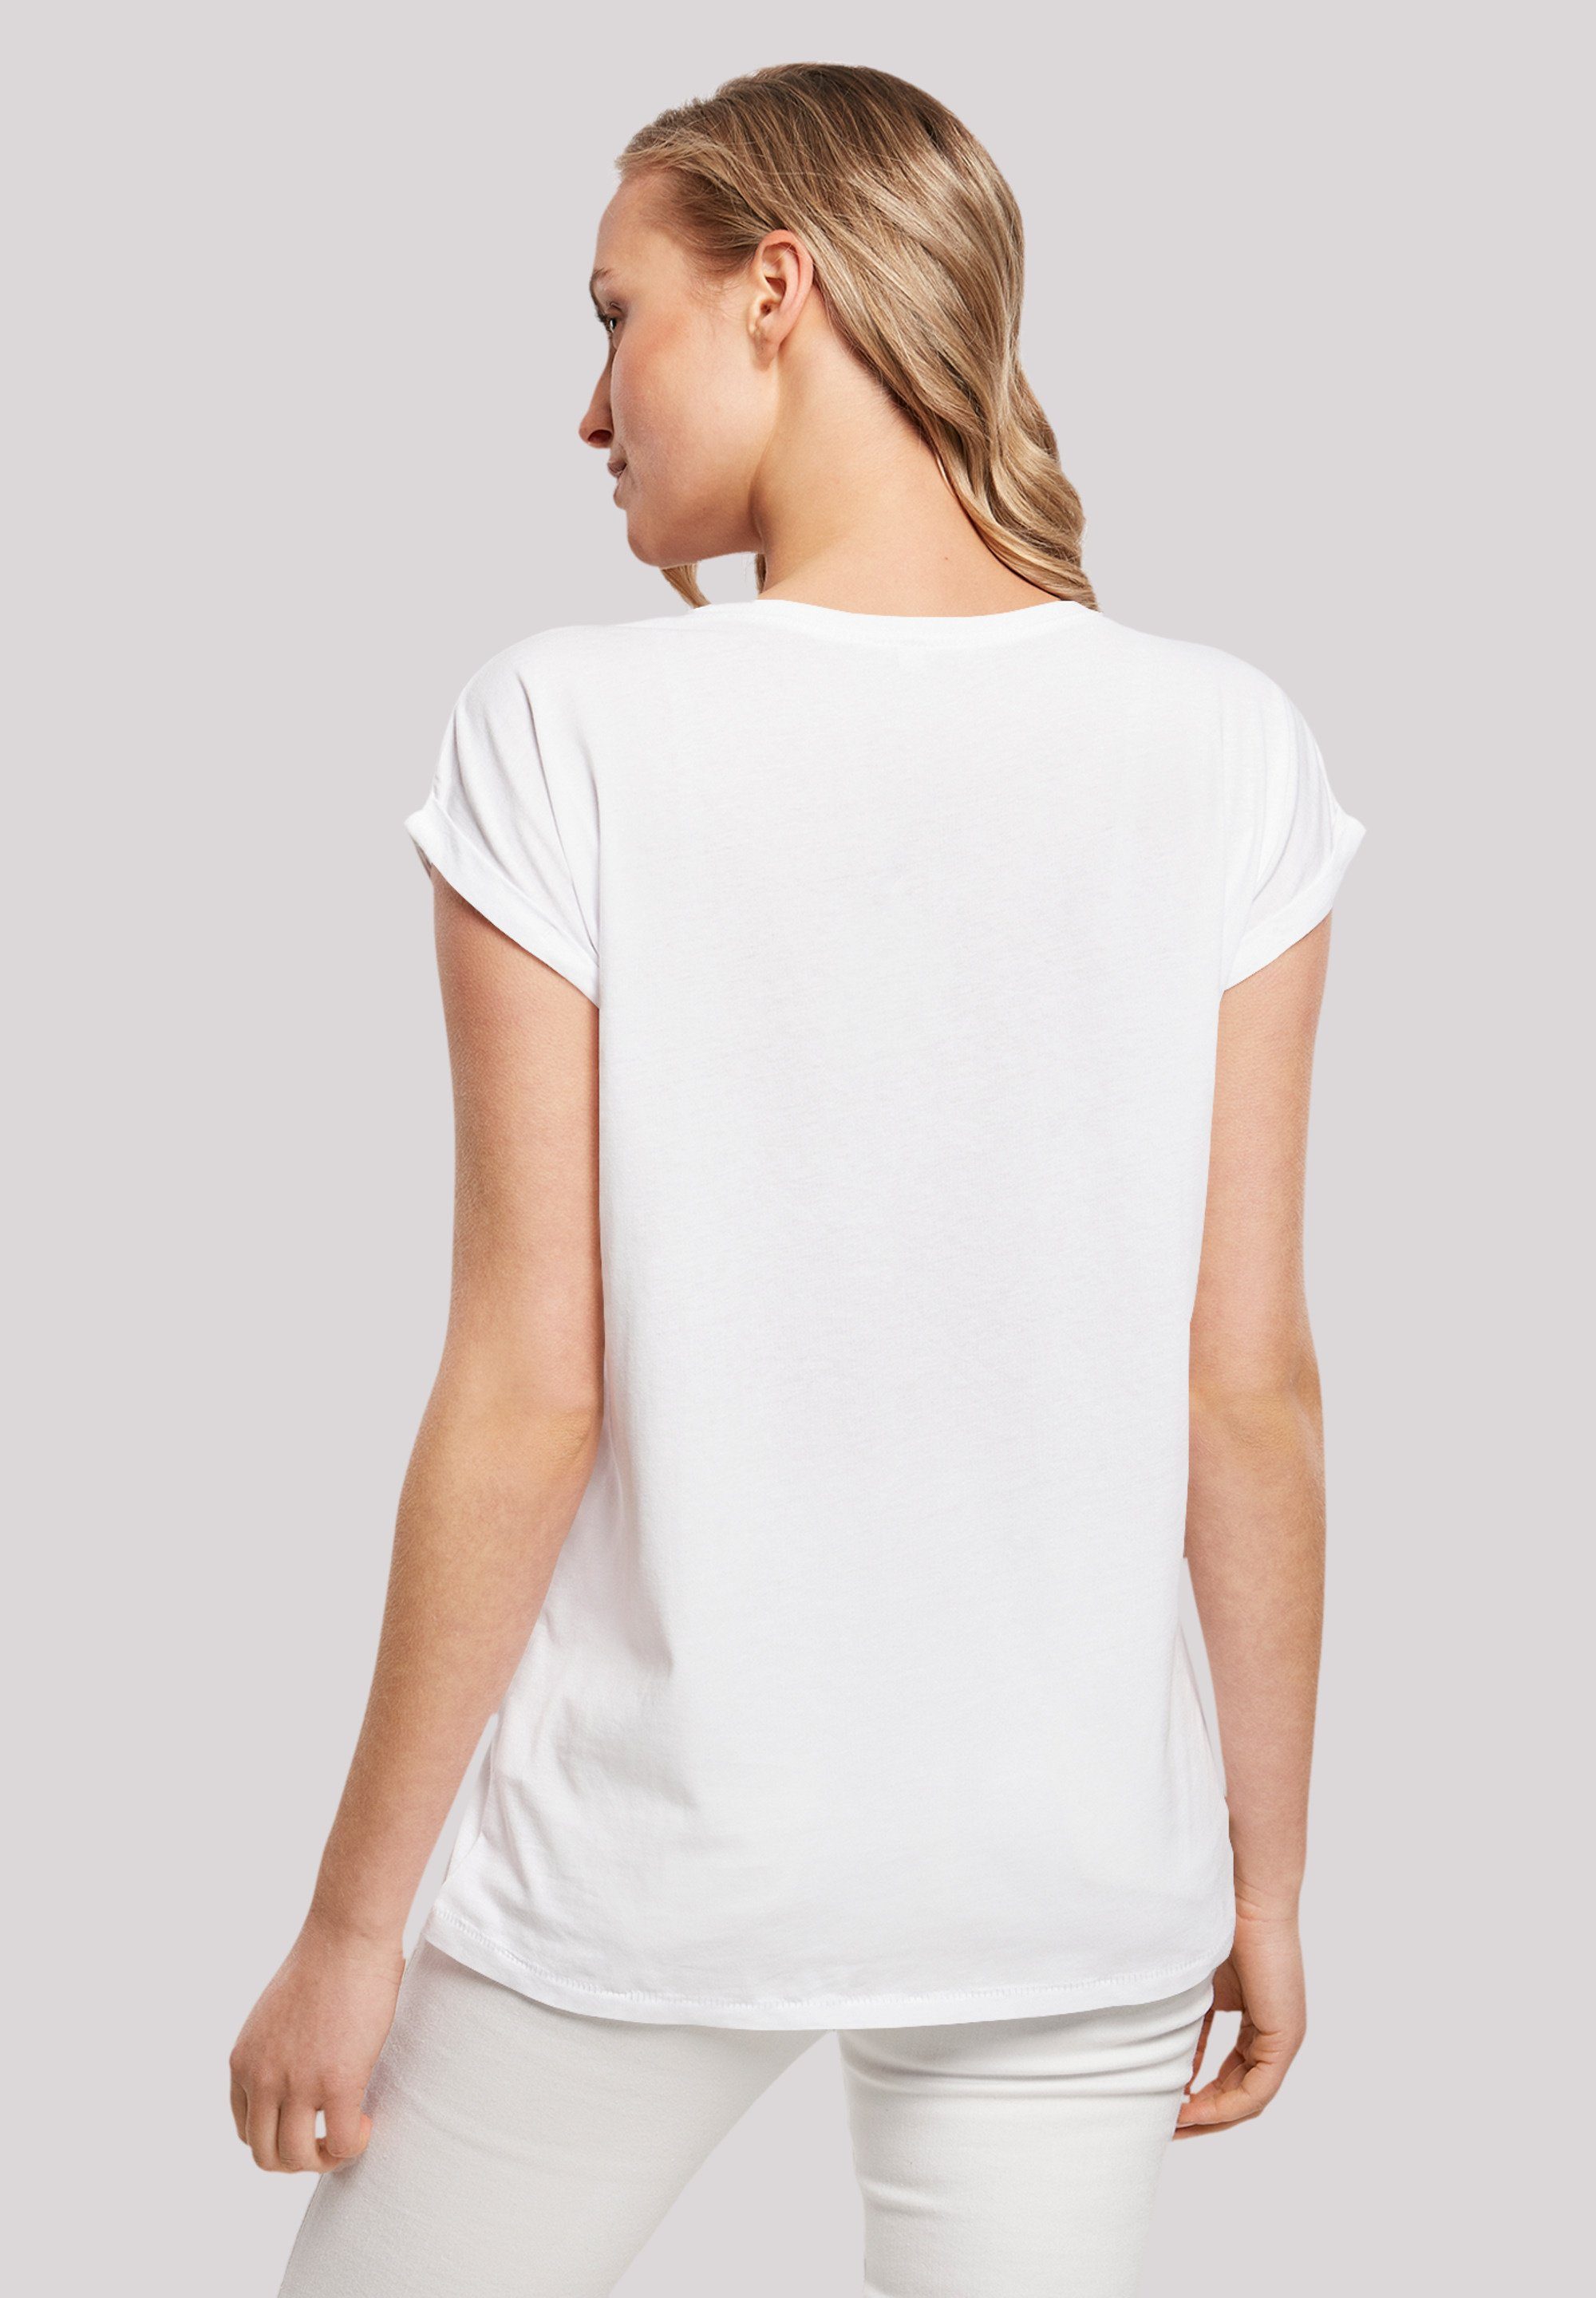 König Disney T-Shirt Premium Löwen Qualität white der F4NT4STIC Together